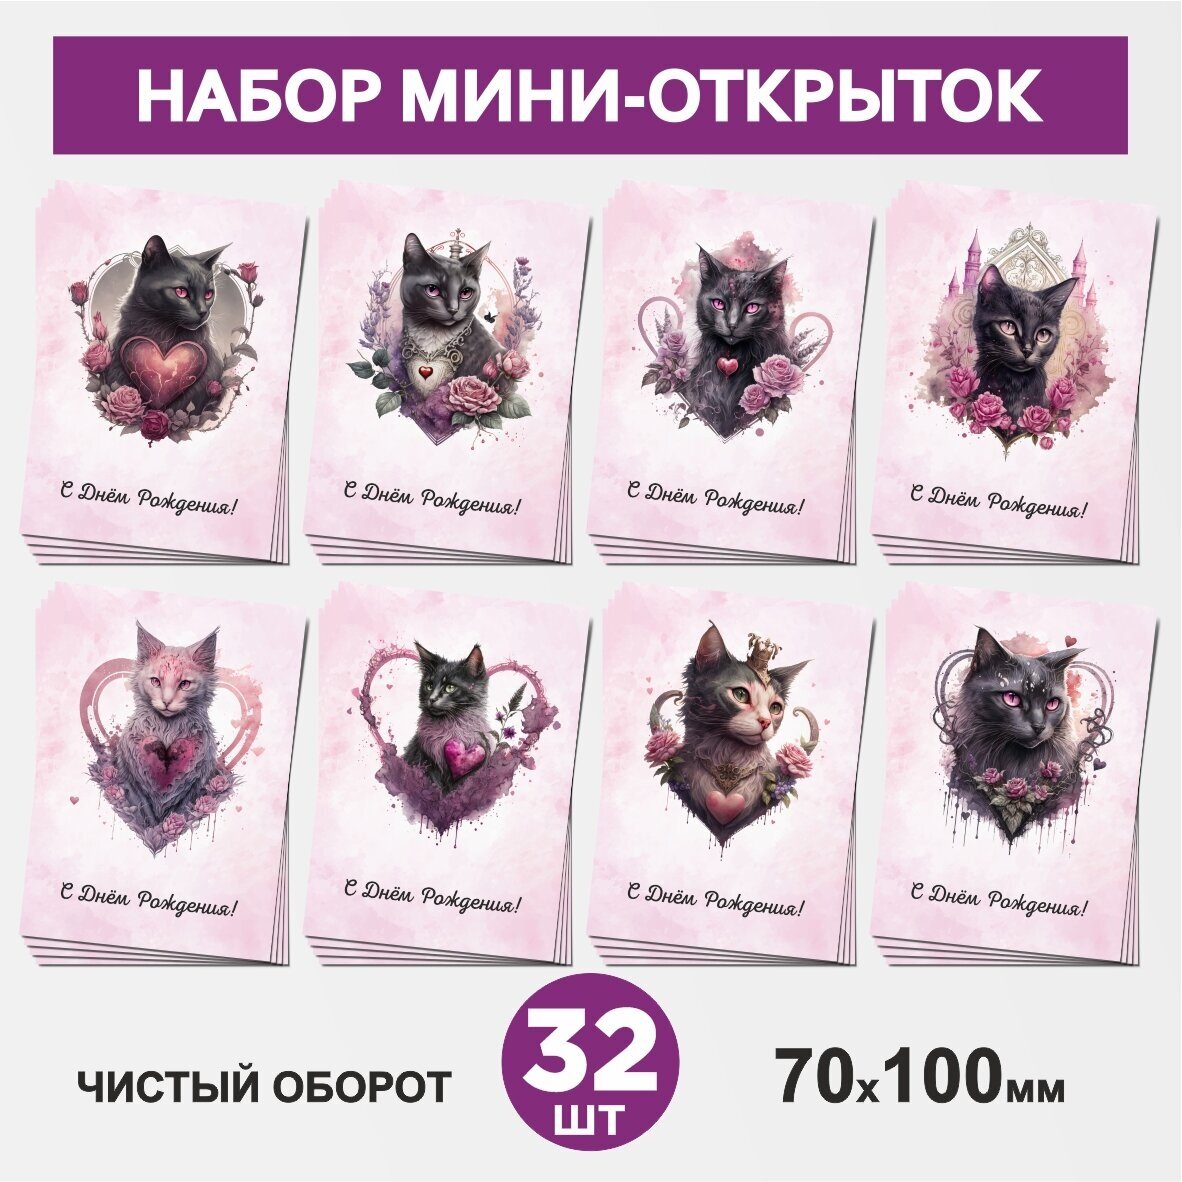 Набор мини-открыток 32 шт, 70х100мм, бирки, карточки, открытки для подарков на День Рождения - Кошка №9.1, postcard_32_cat_set_9.1